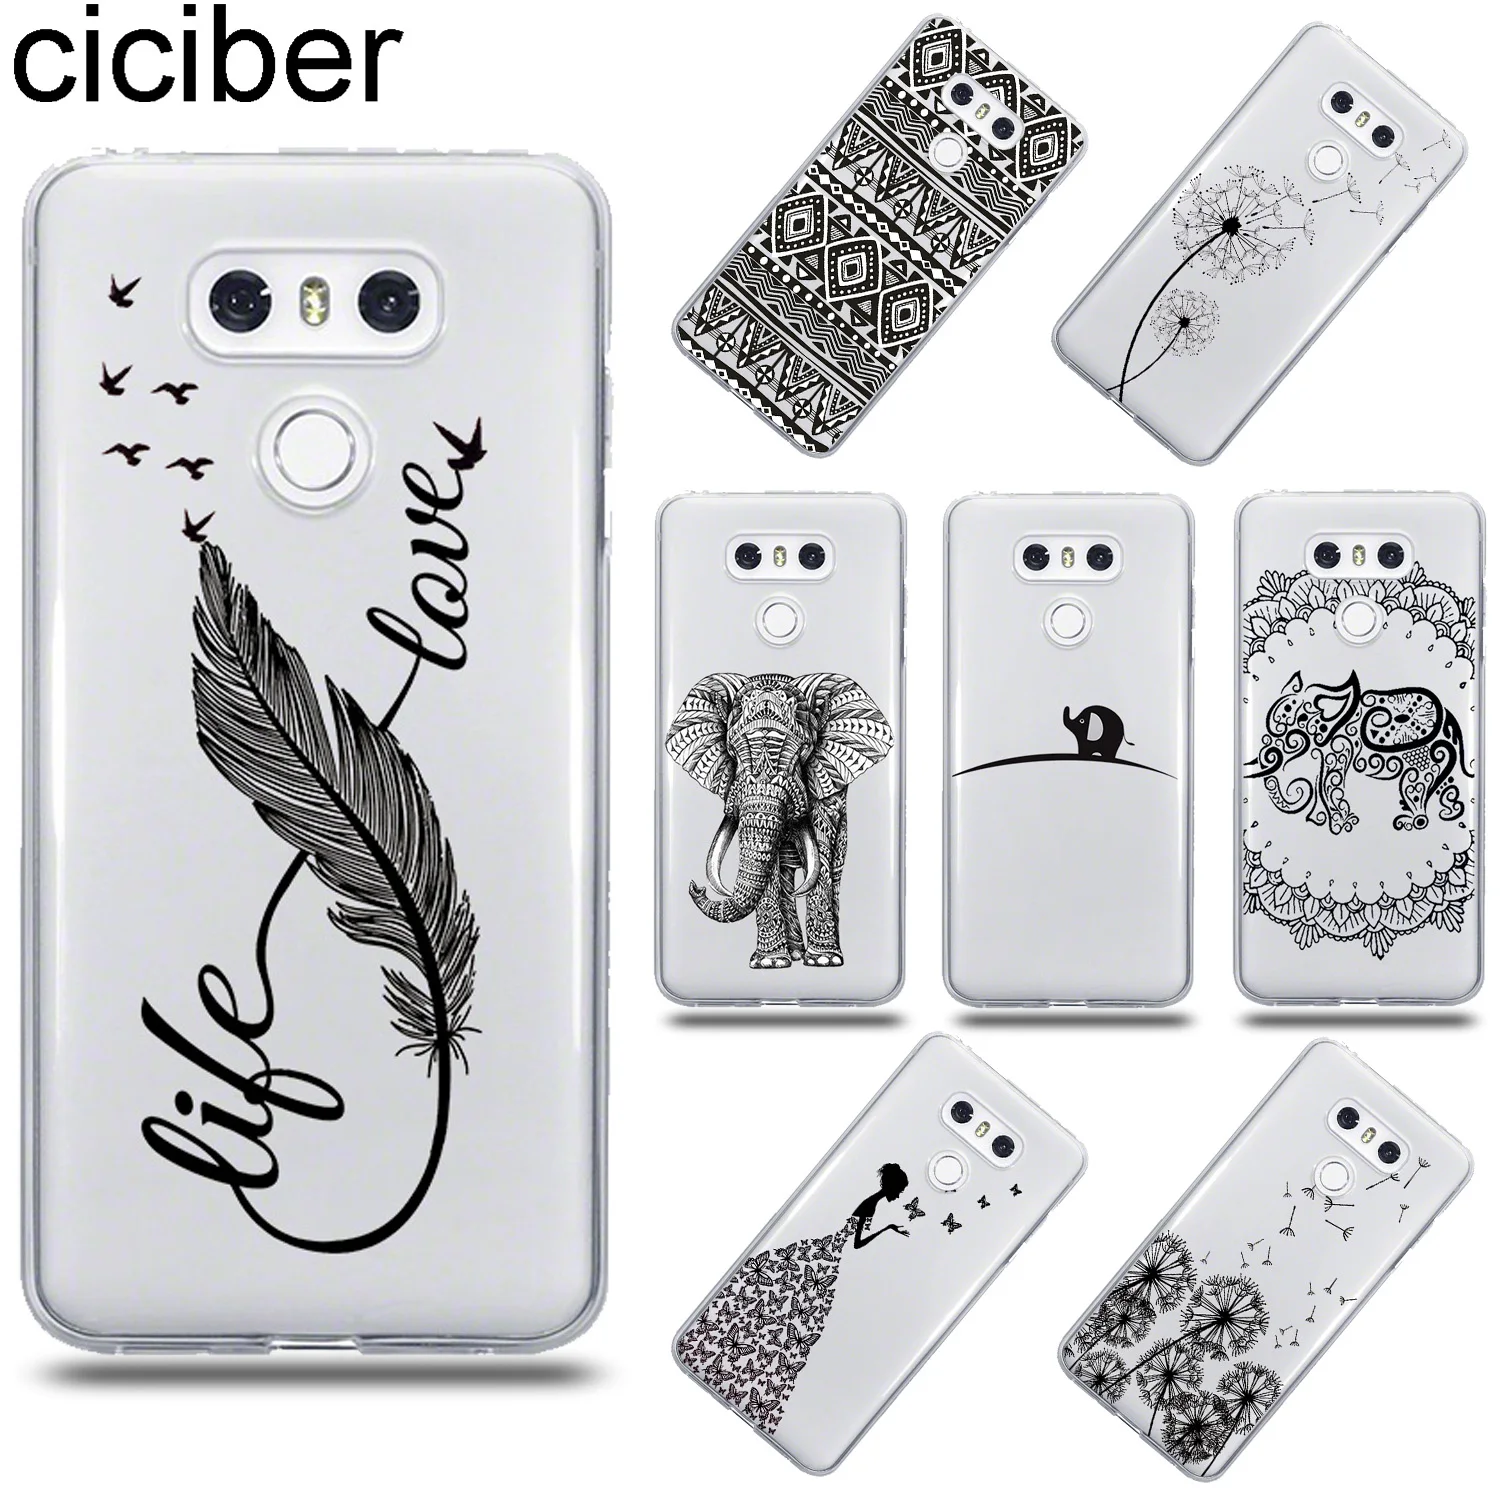 

ciciber Totem Animal Girl For LG G6 G7 G5 G4 V20 V30 V35 V40 THINQ Soft TPU Phone Case For LG K8 K7 K10 K4 2017 2018 K9 K11 Plus